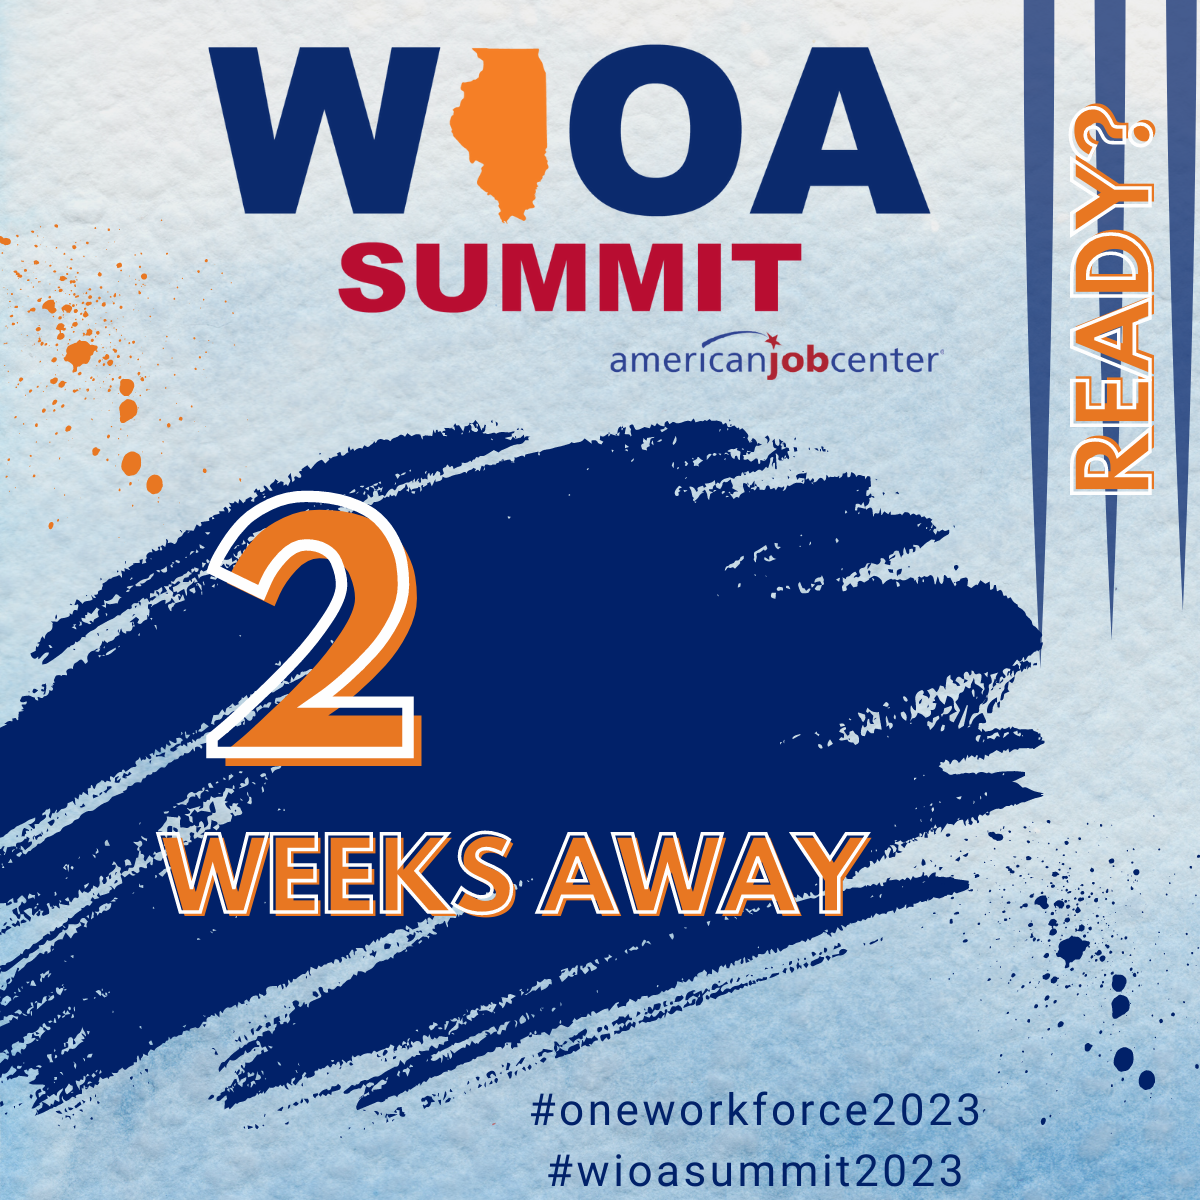 WIOA Summit 2 Weeks Away